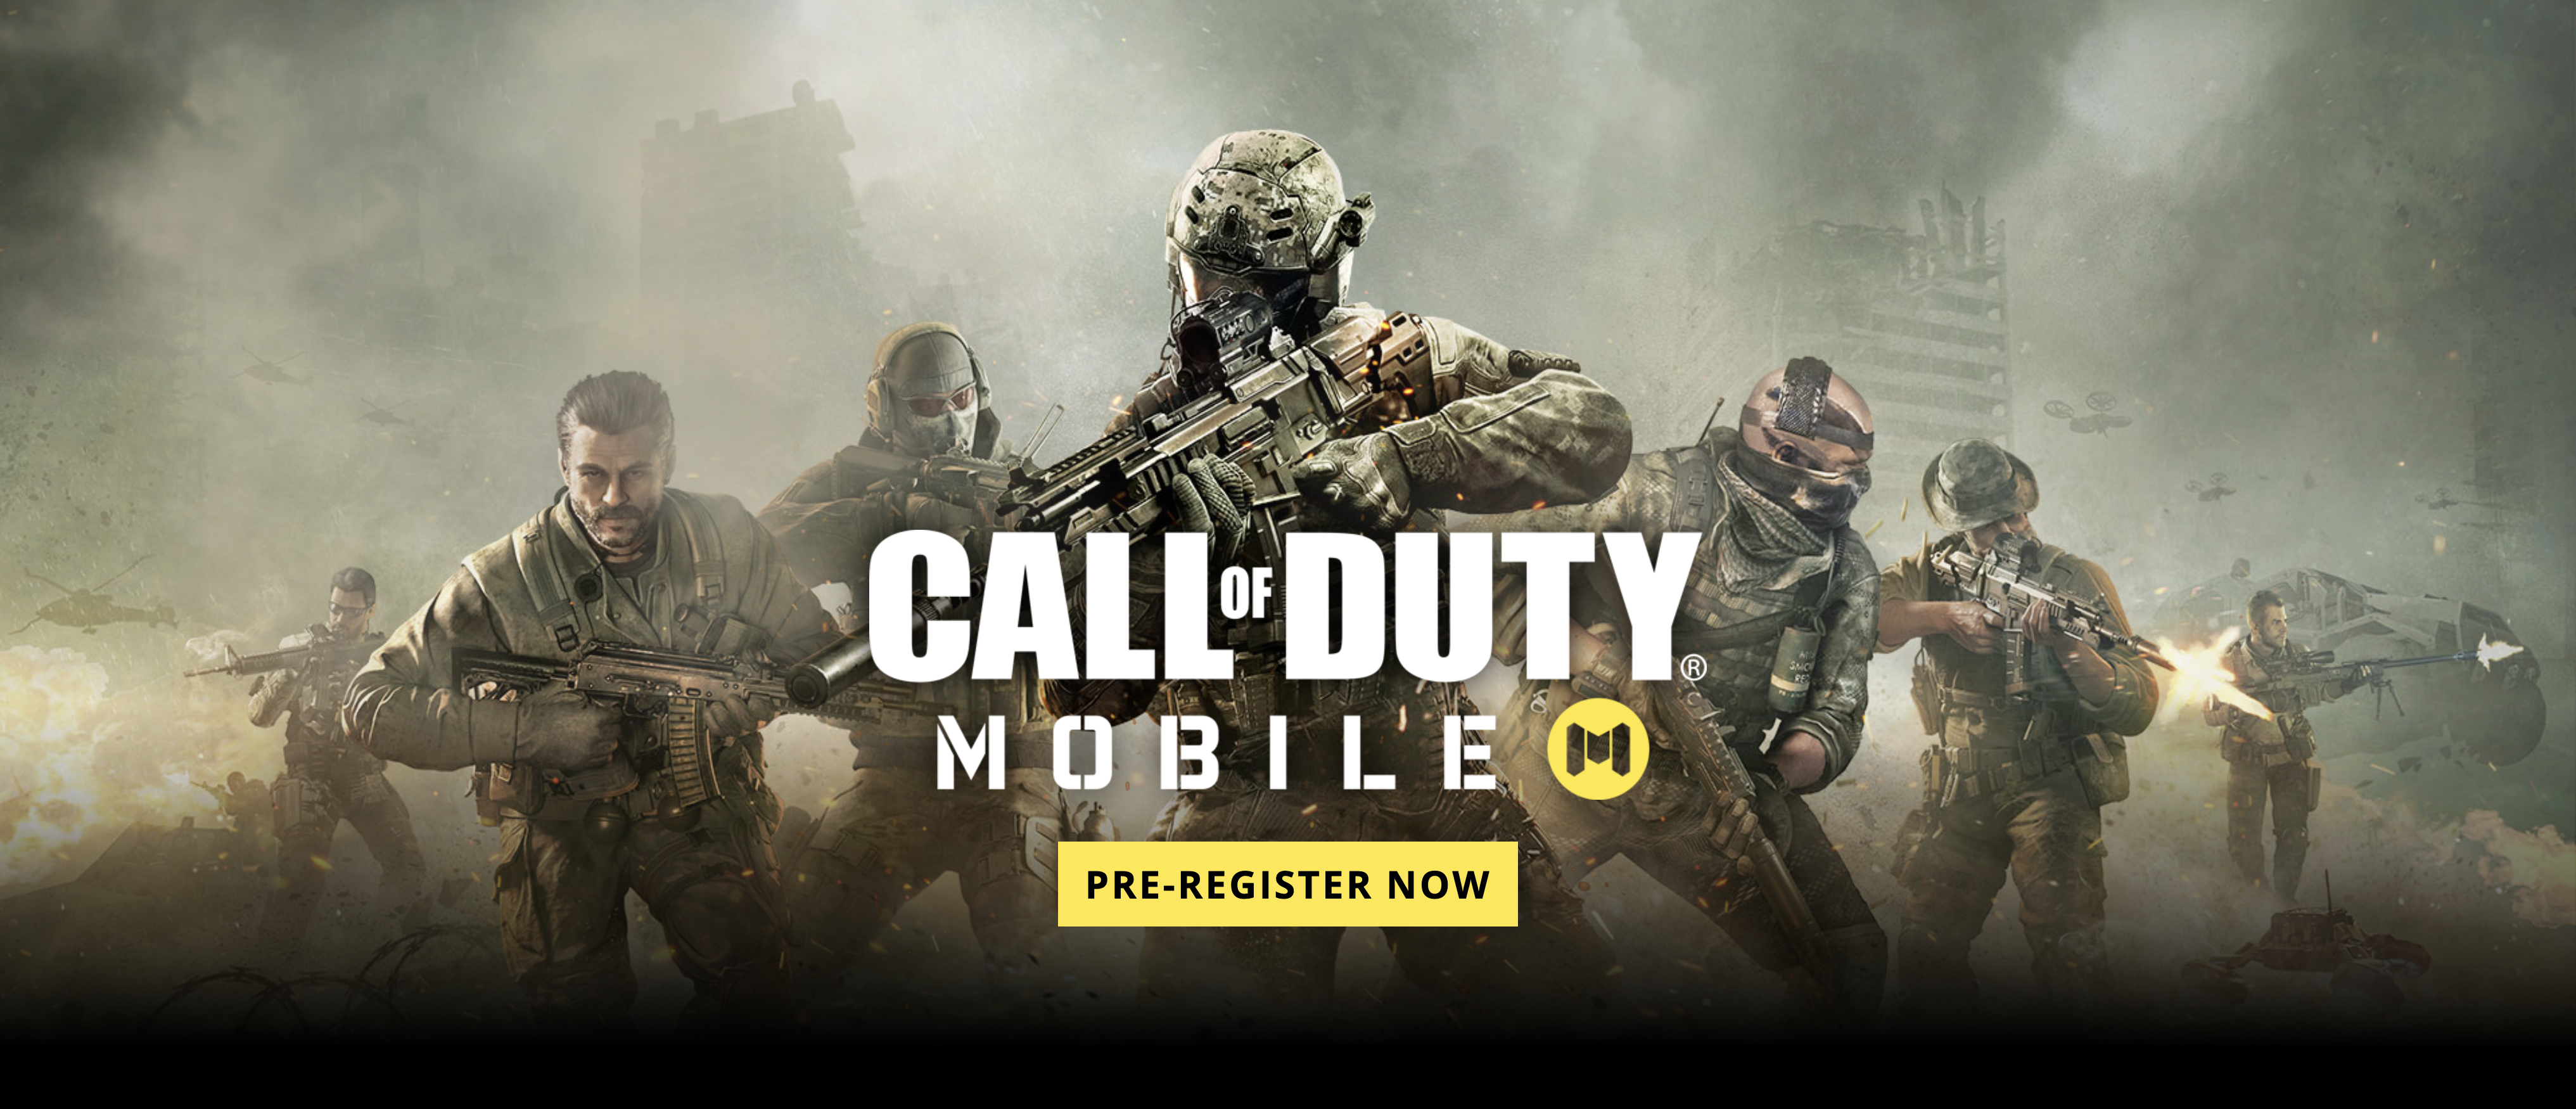 พวกคุณมีมือถือกันทุกคนใช่มั้ย ได้! เปิดตัว Call of Duty®: Mobile